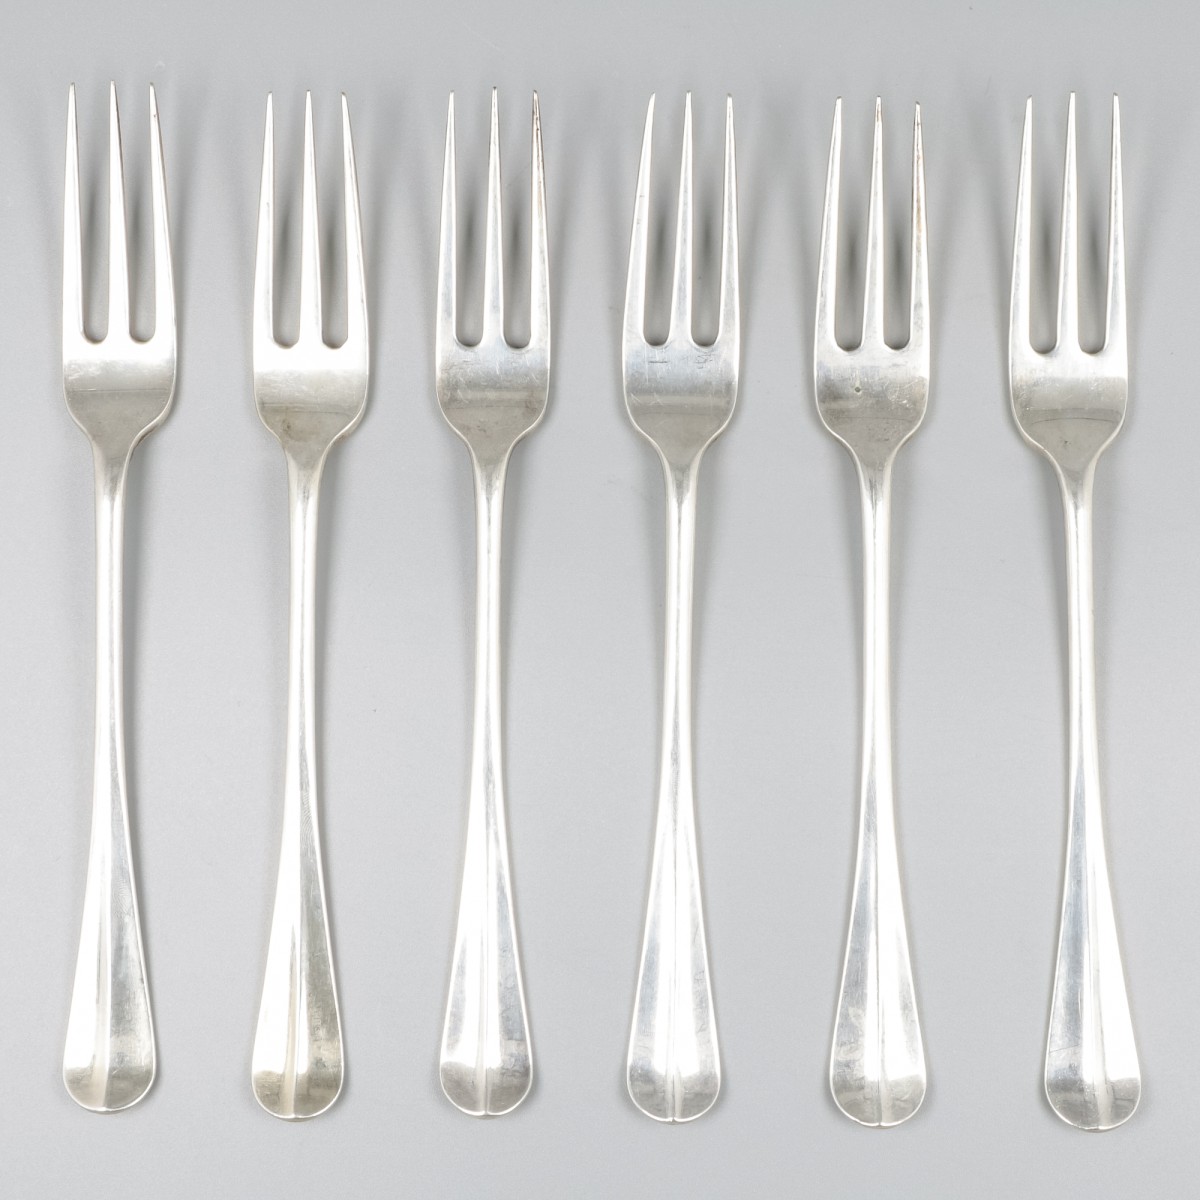 6-delige set vorken zilver.